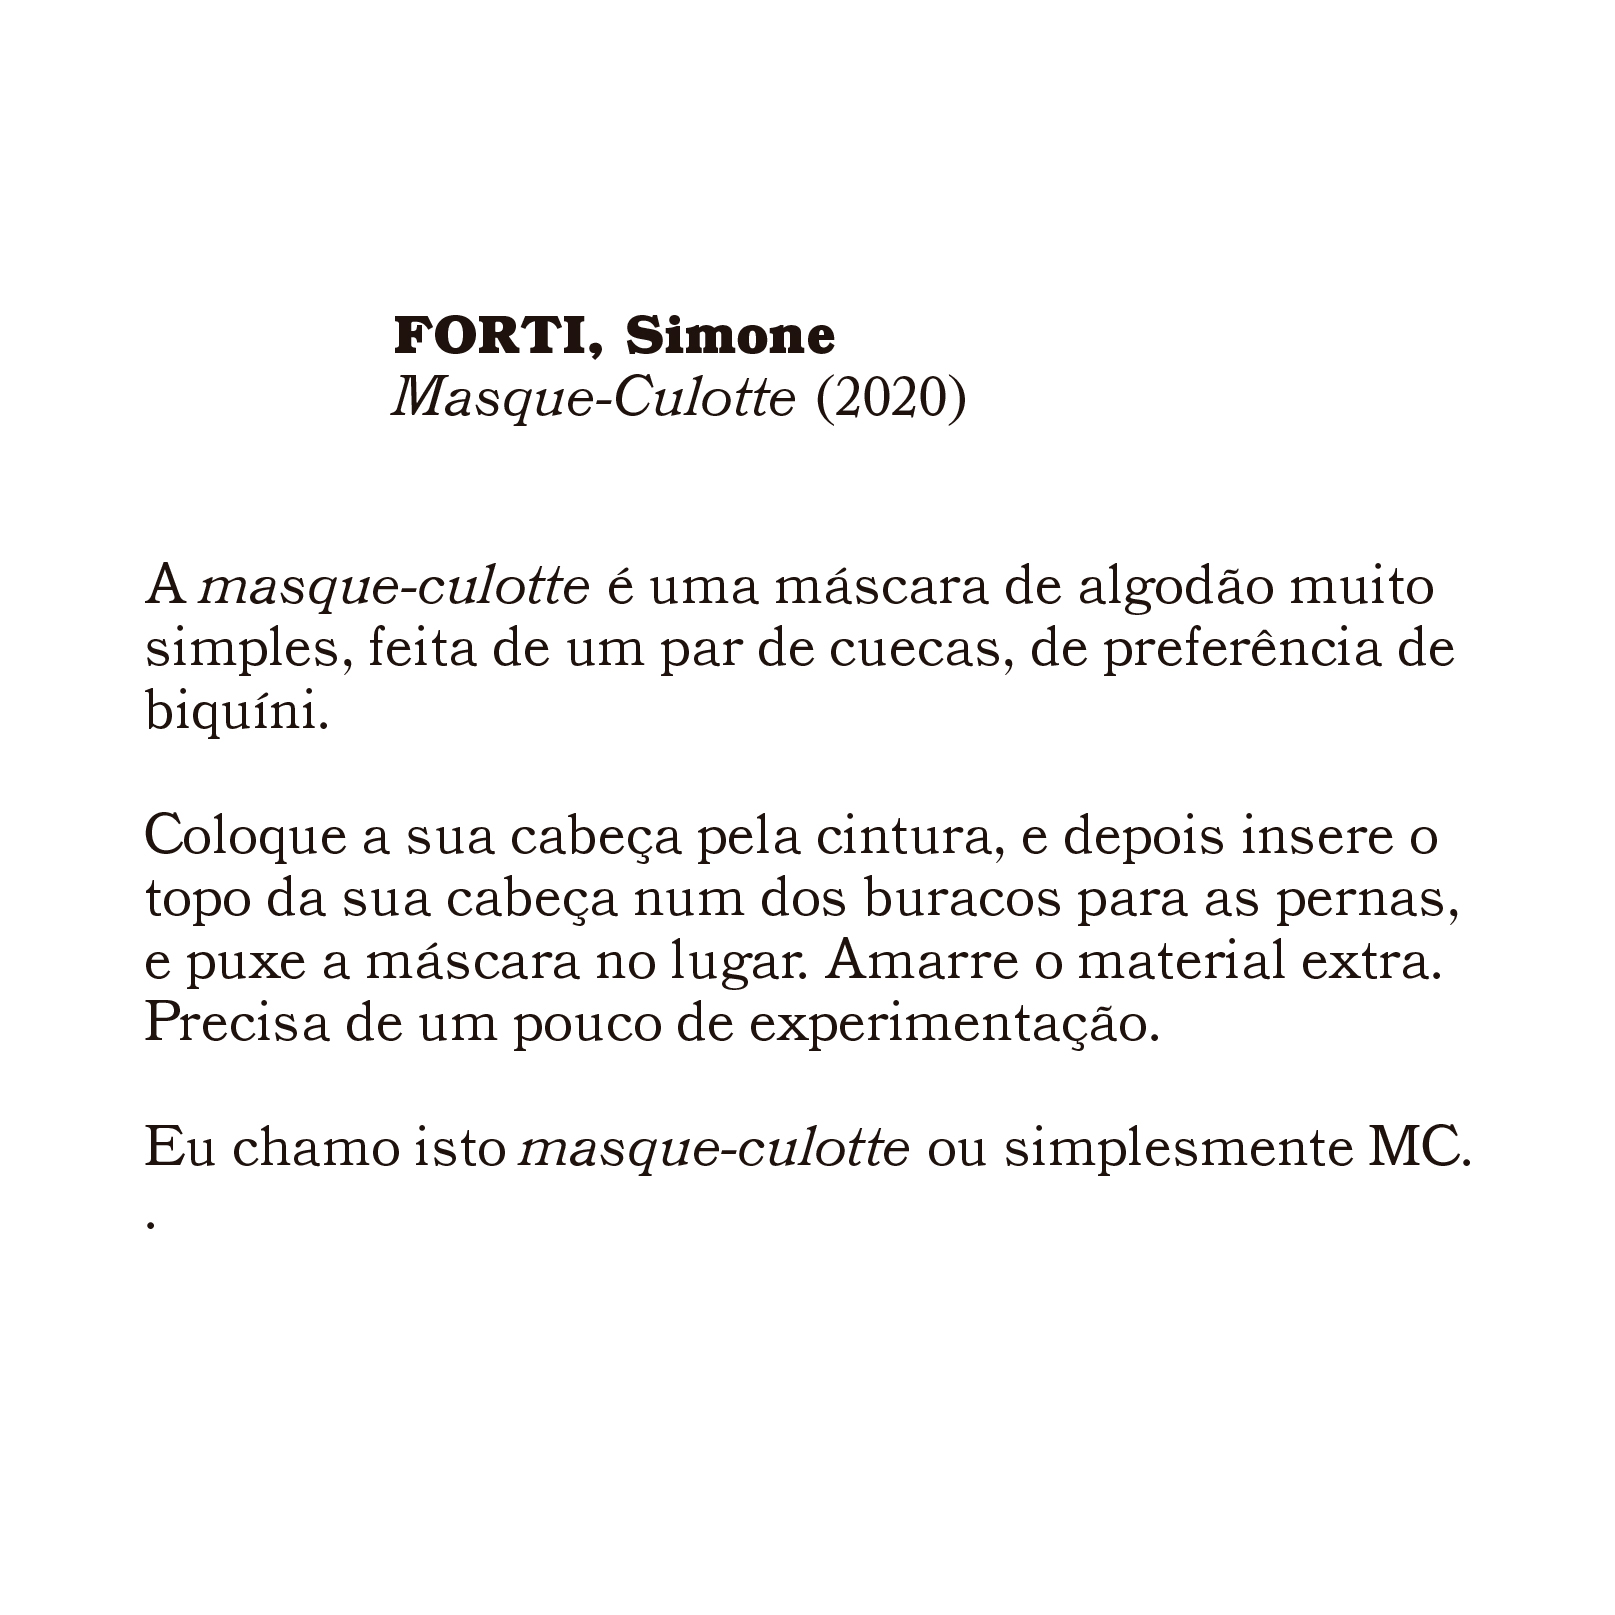 copia_de_forti_simone_masque-culotte_2020.jpg